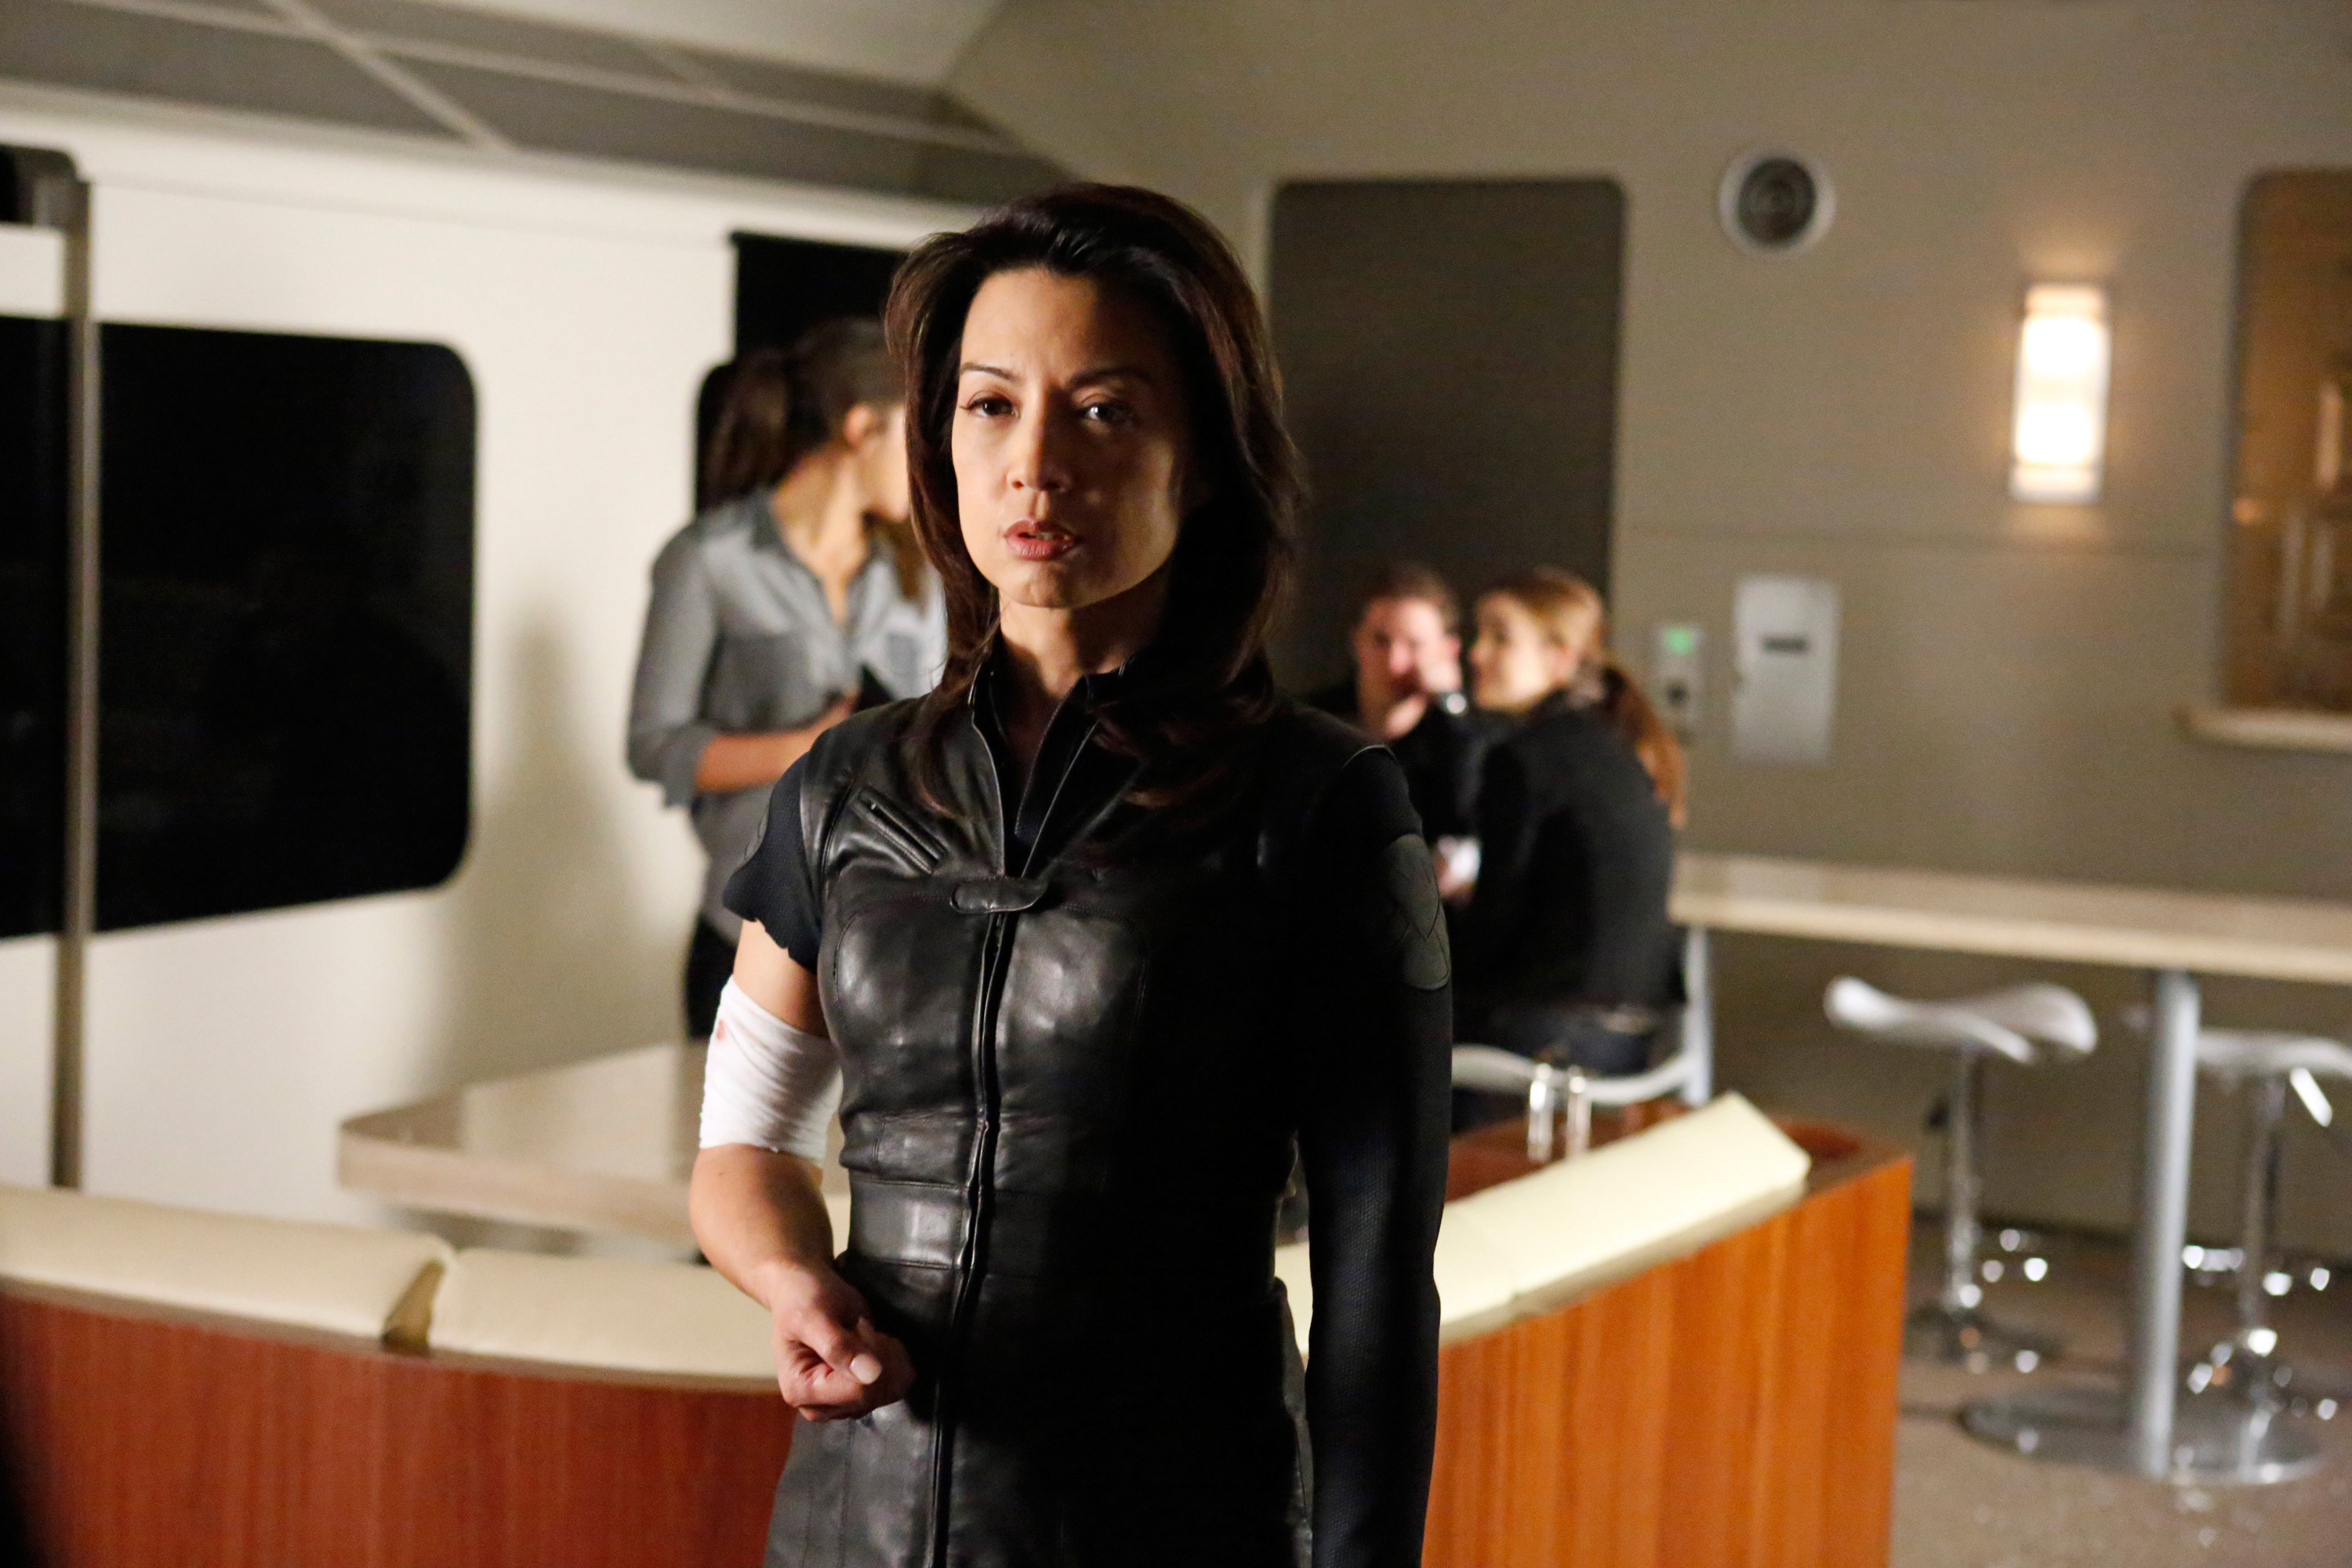 Agent Melinda May in S.H.I.E.L.D. uniform holding a gun